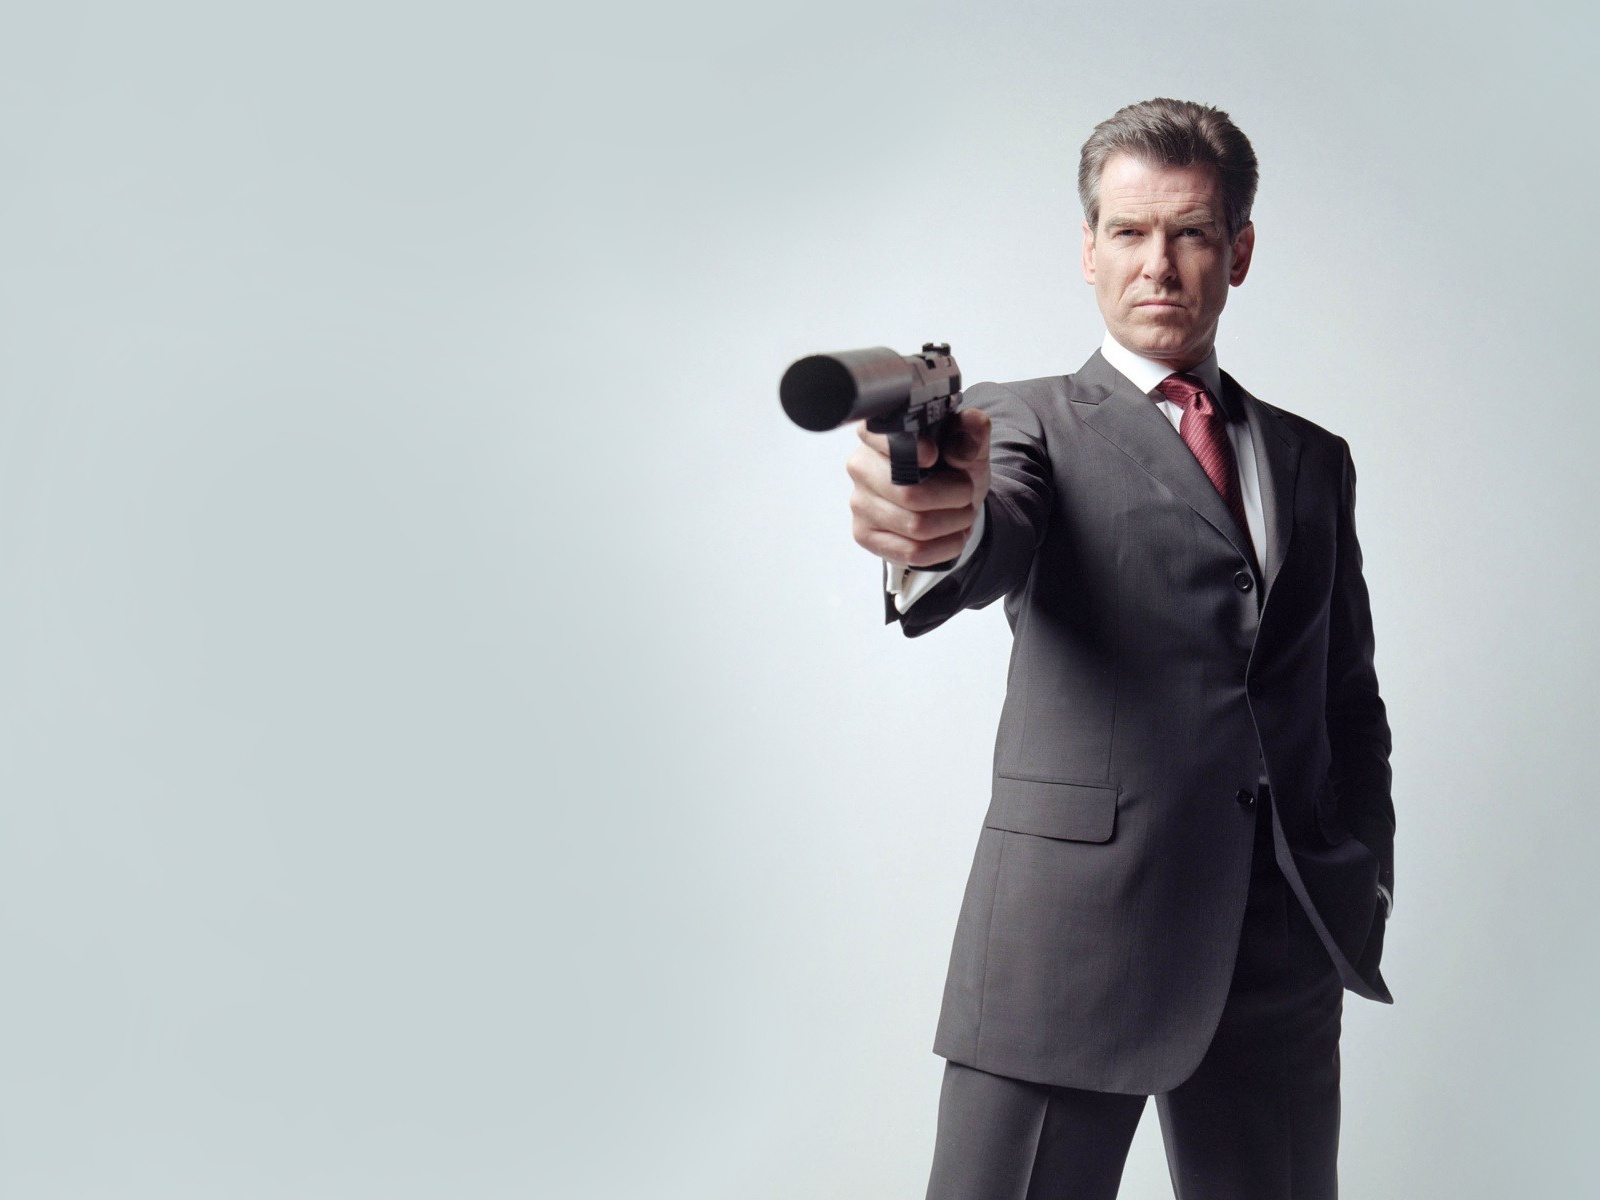 Il prossimo James Bond potrà essere gay? Gli interpreti si dividono - pierce brosnan 007 - Gay.it